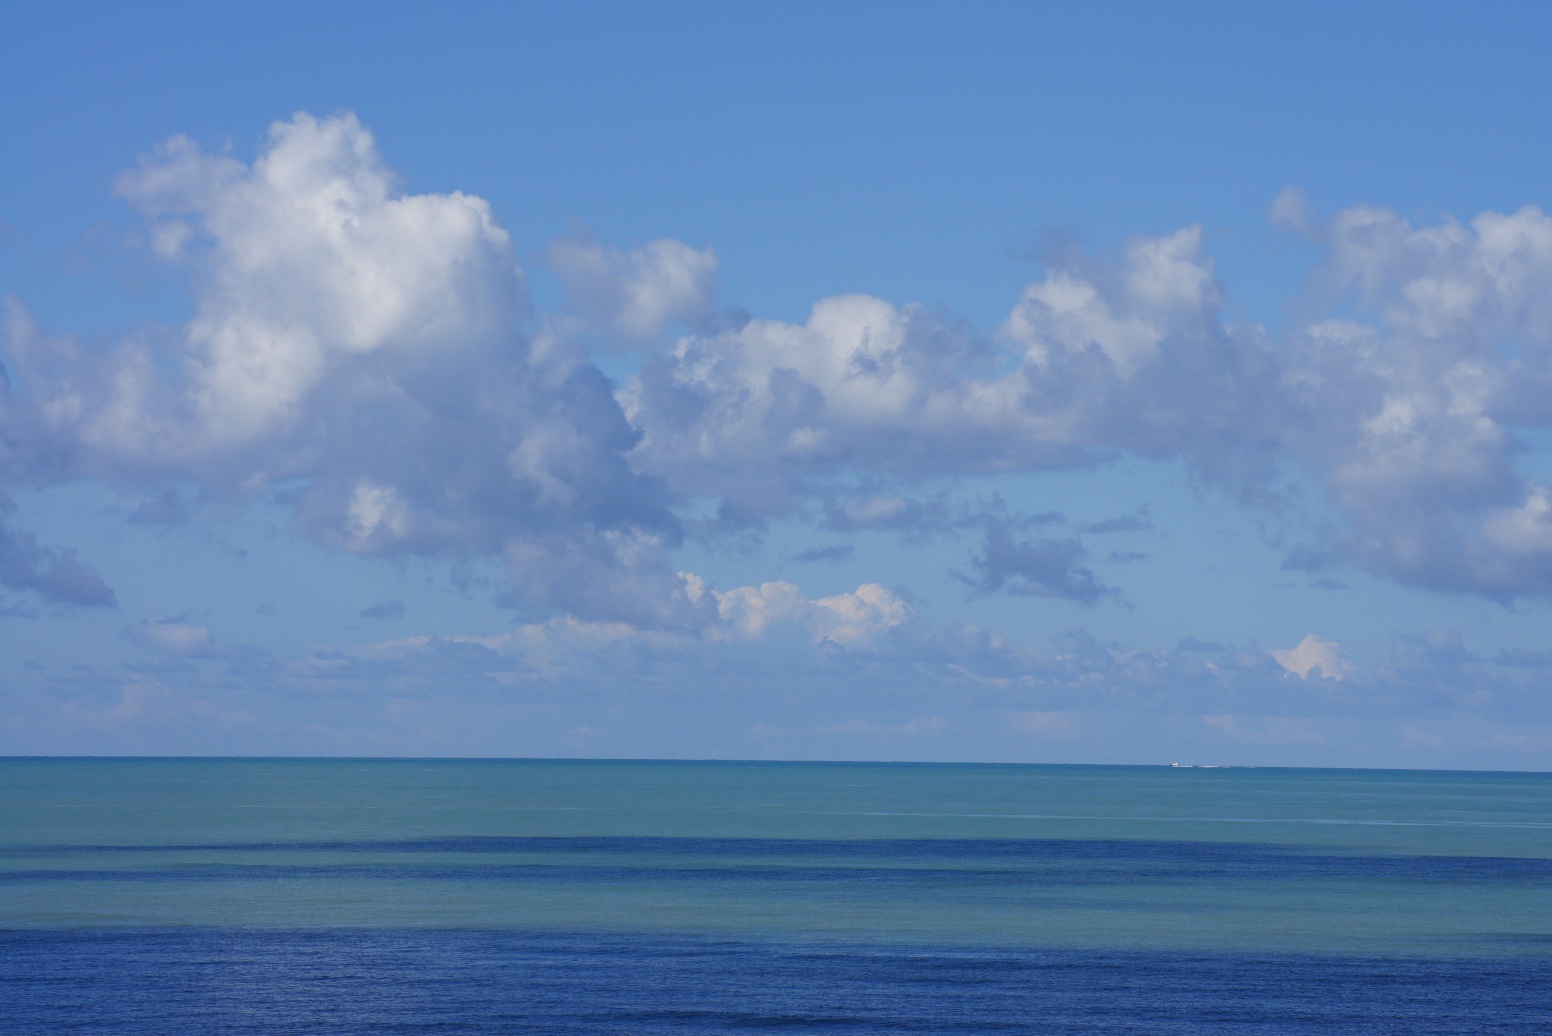 Reflet de nuage sur la mer, Qerret, 15 septembre 2014